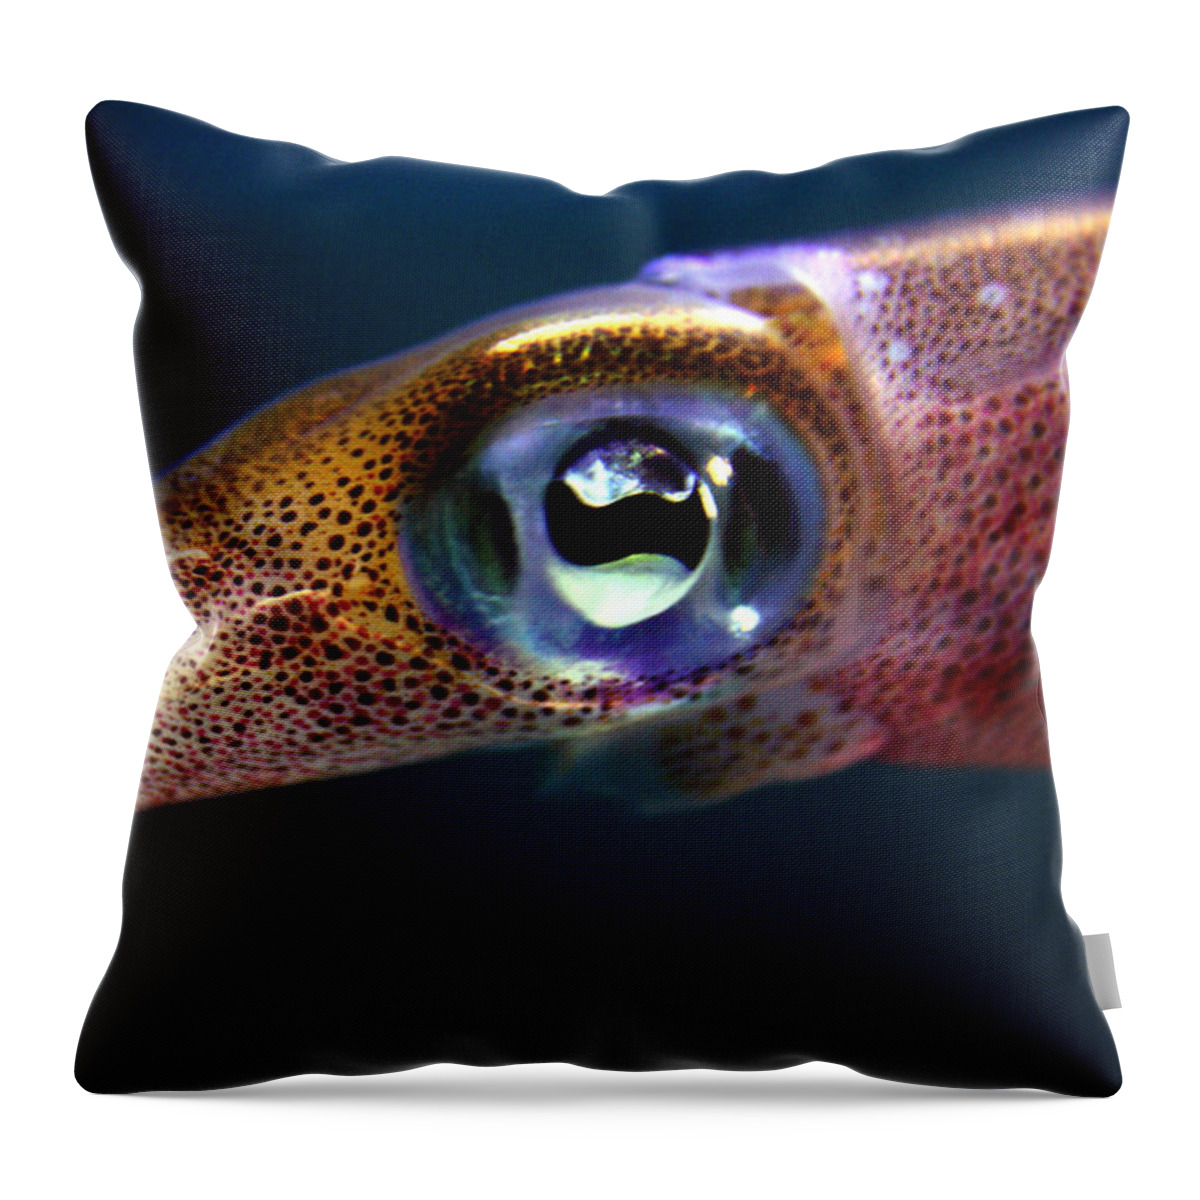 Waikiki Aquarium Throw Pillow featuring the photograph Squid Eye by Jennifer Bright Burr